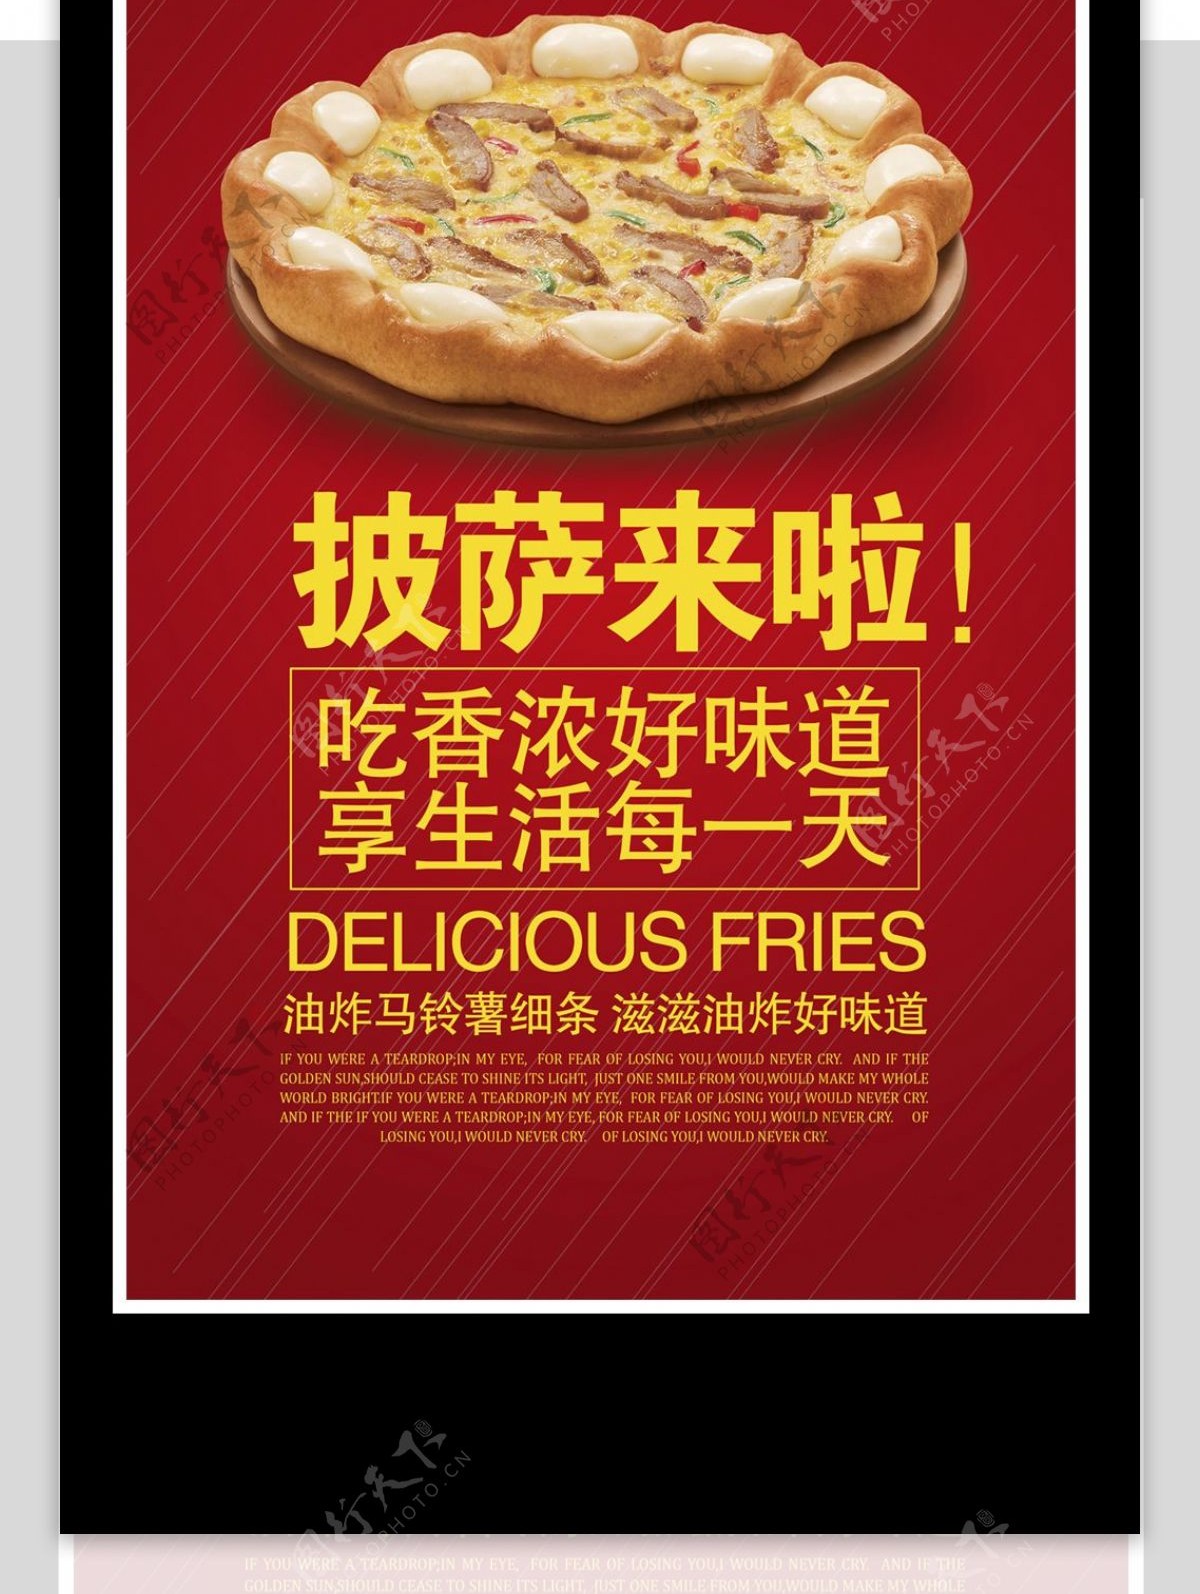 美味披萨促销海报设计